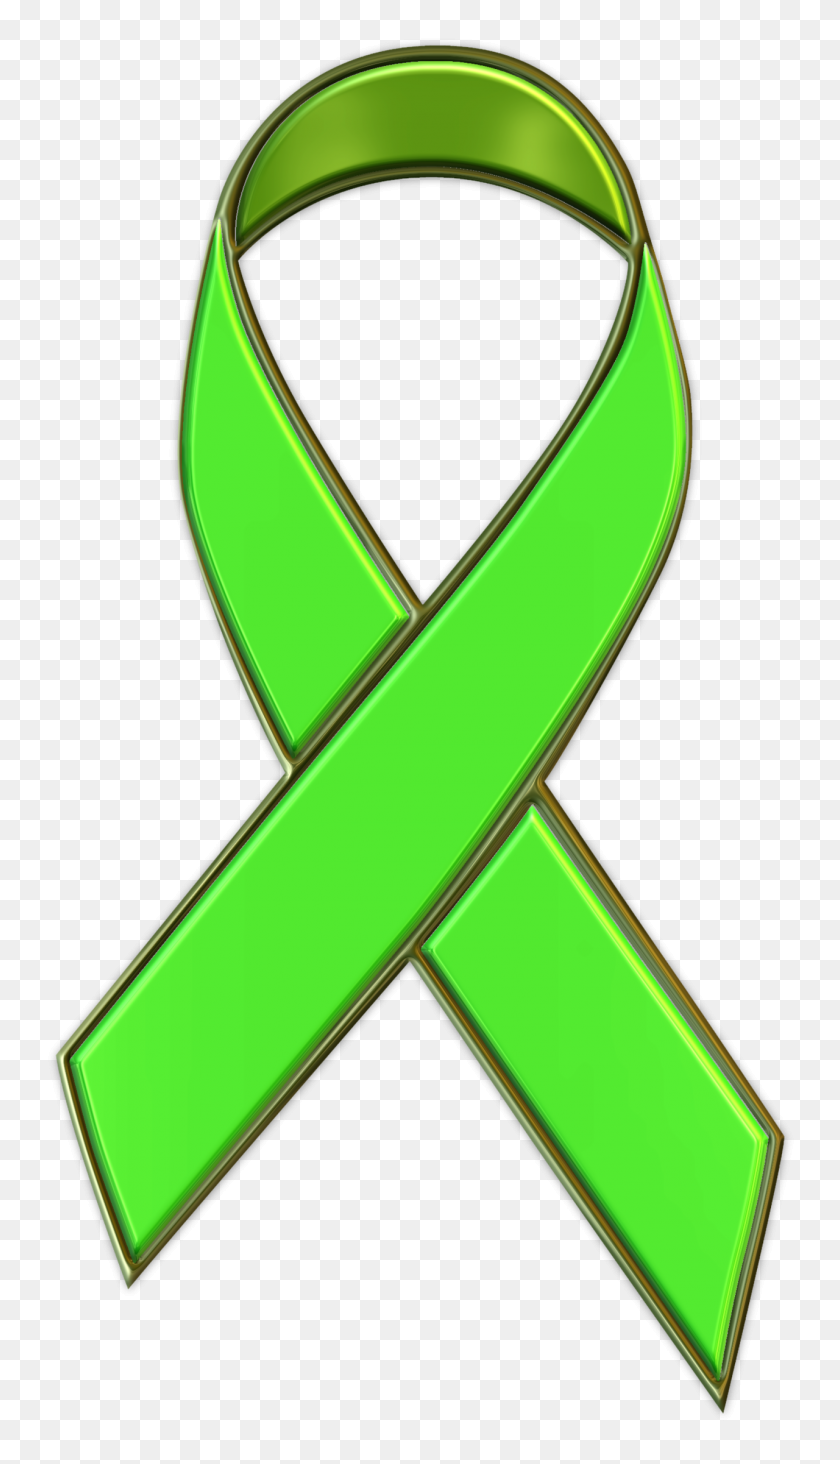 1280x2304 Изображение Липкой Зеленой Ленты Для Поддержки Осведомленности О Психическом Здоровье - Зеленая Лента Png